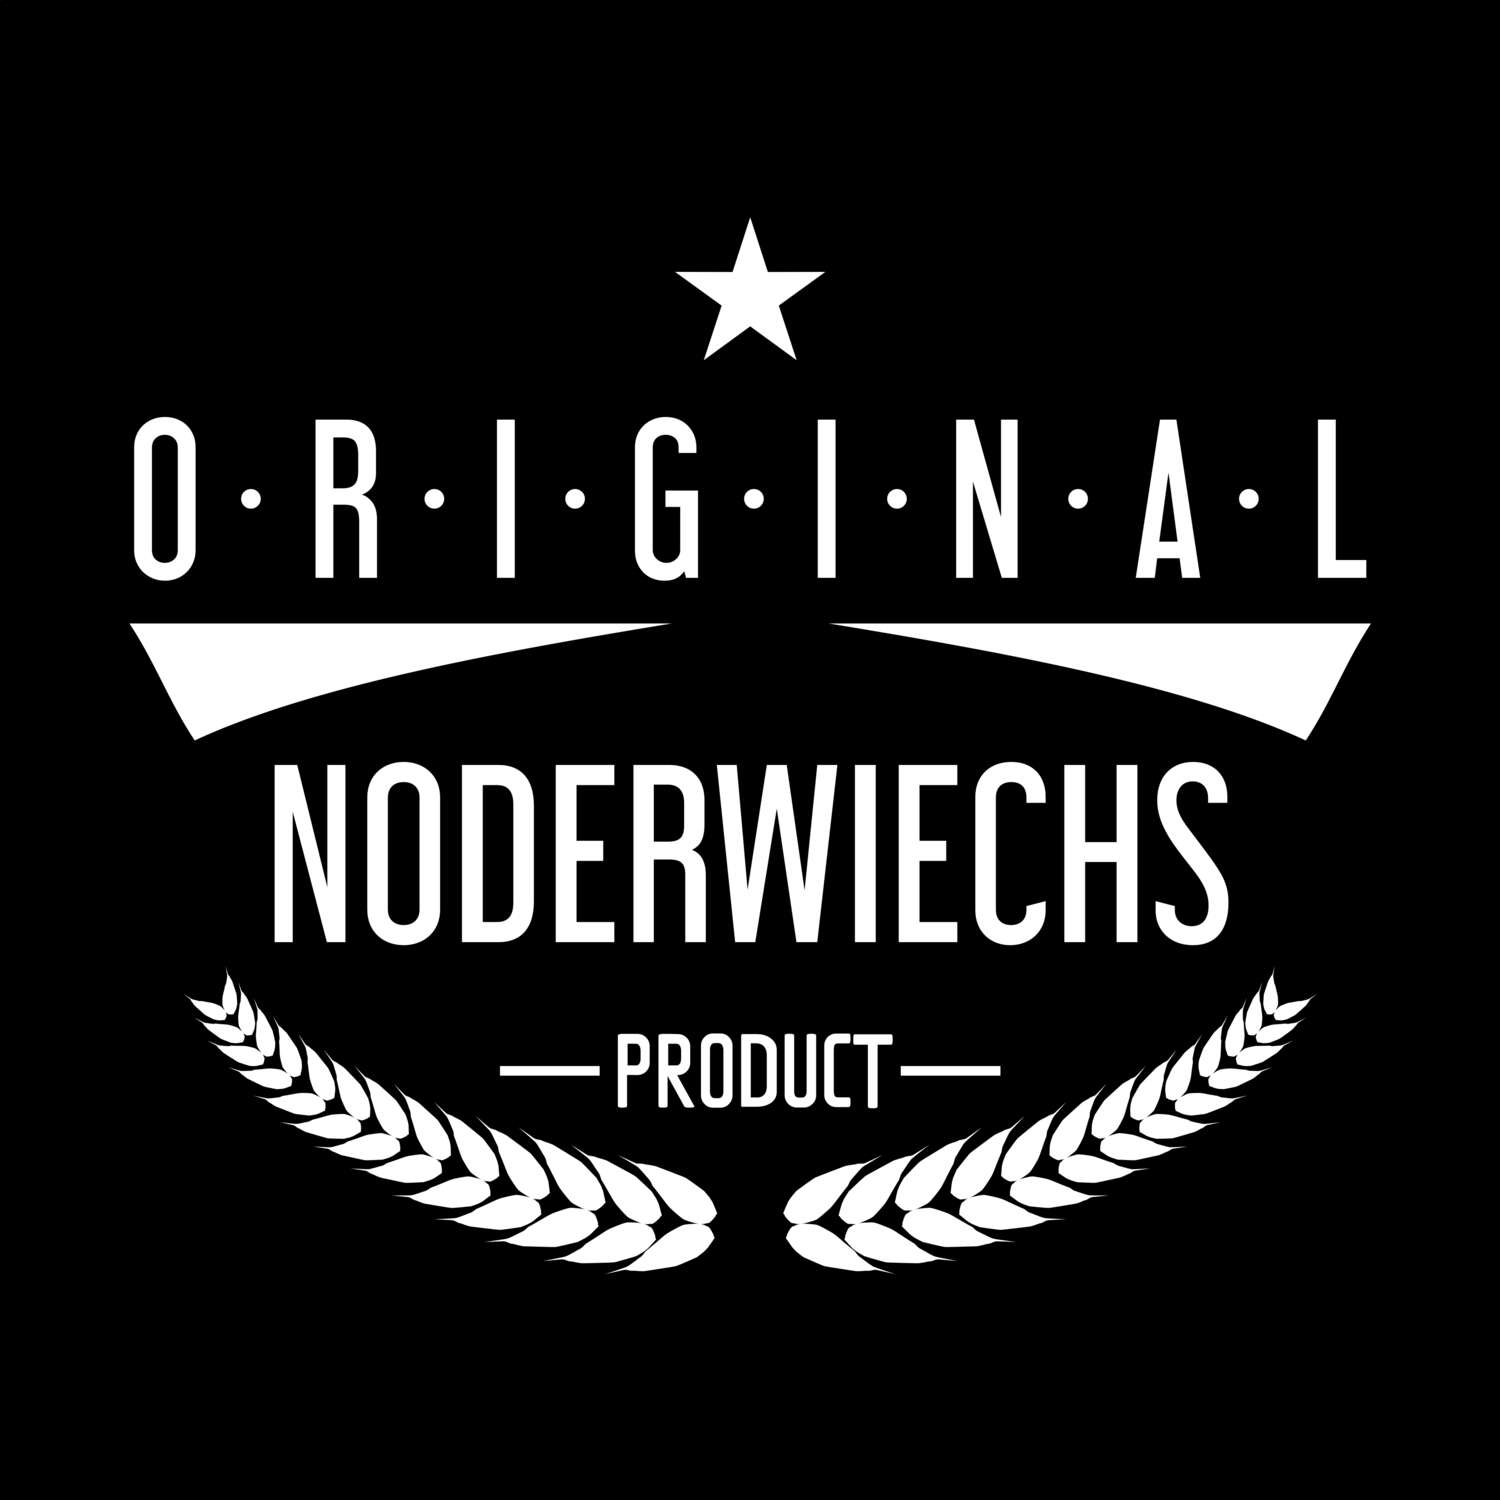 Noderwiechs T-Shirt »Original Product«